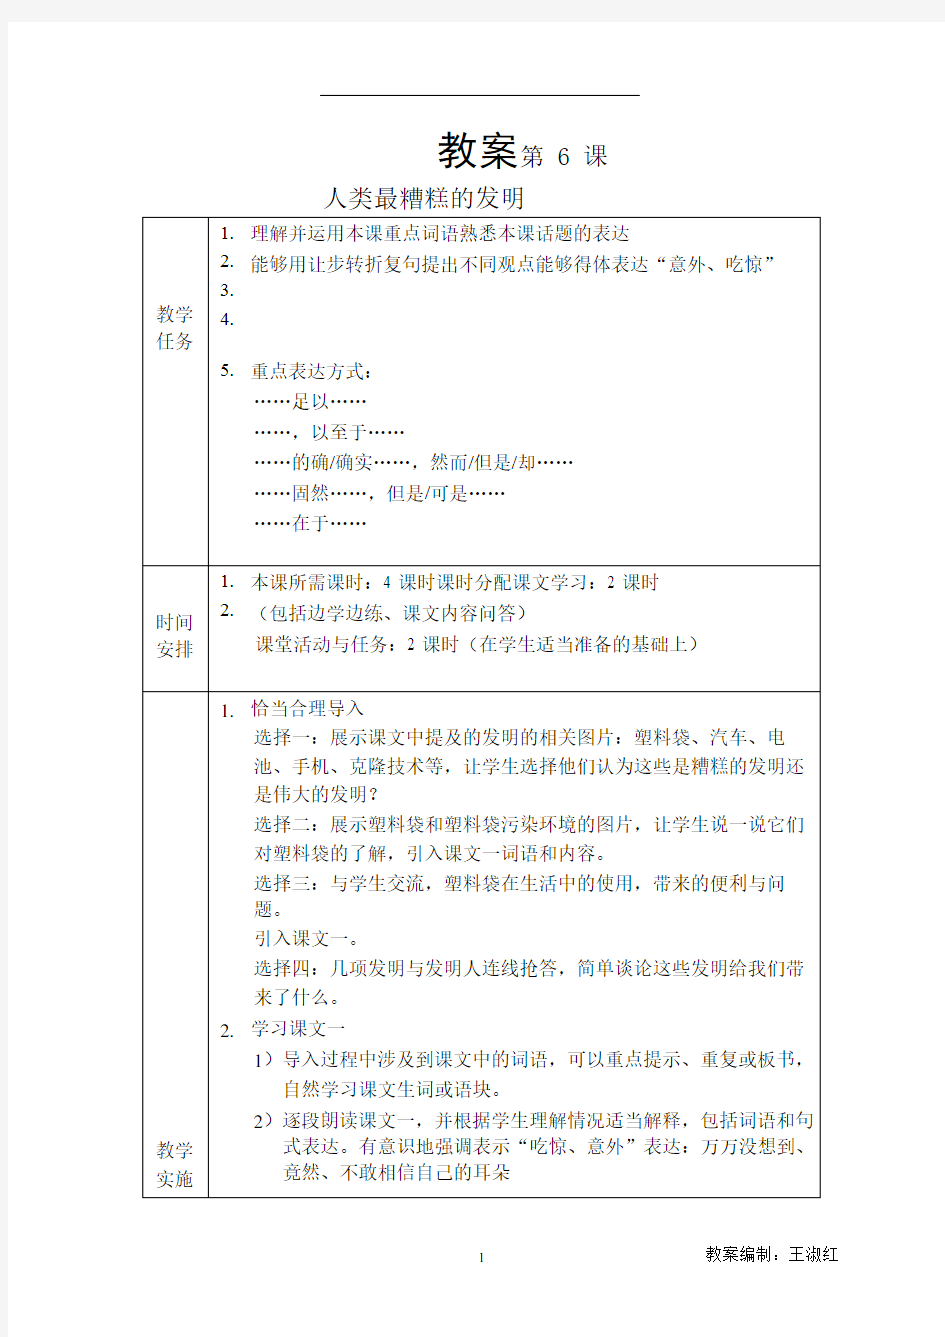 发展汉语(第二版)高级口语Ⅰ-6教案人类最槽糕的发明